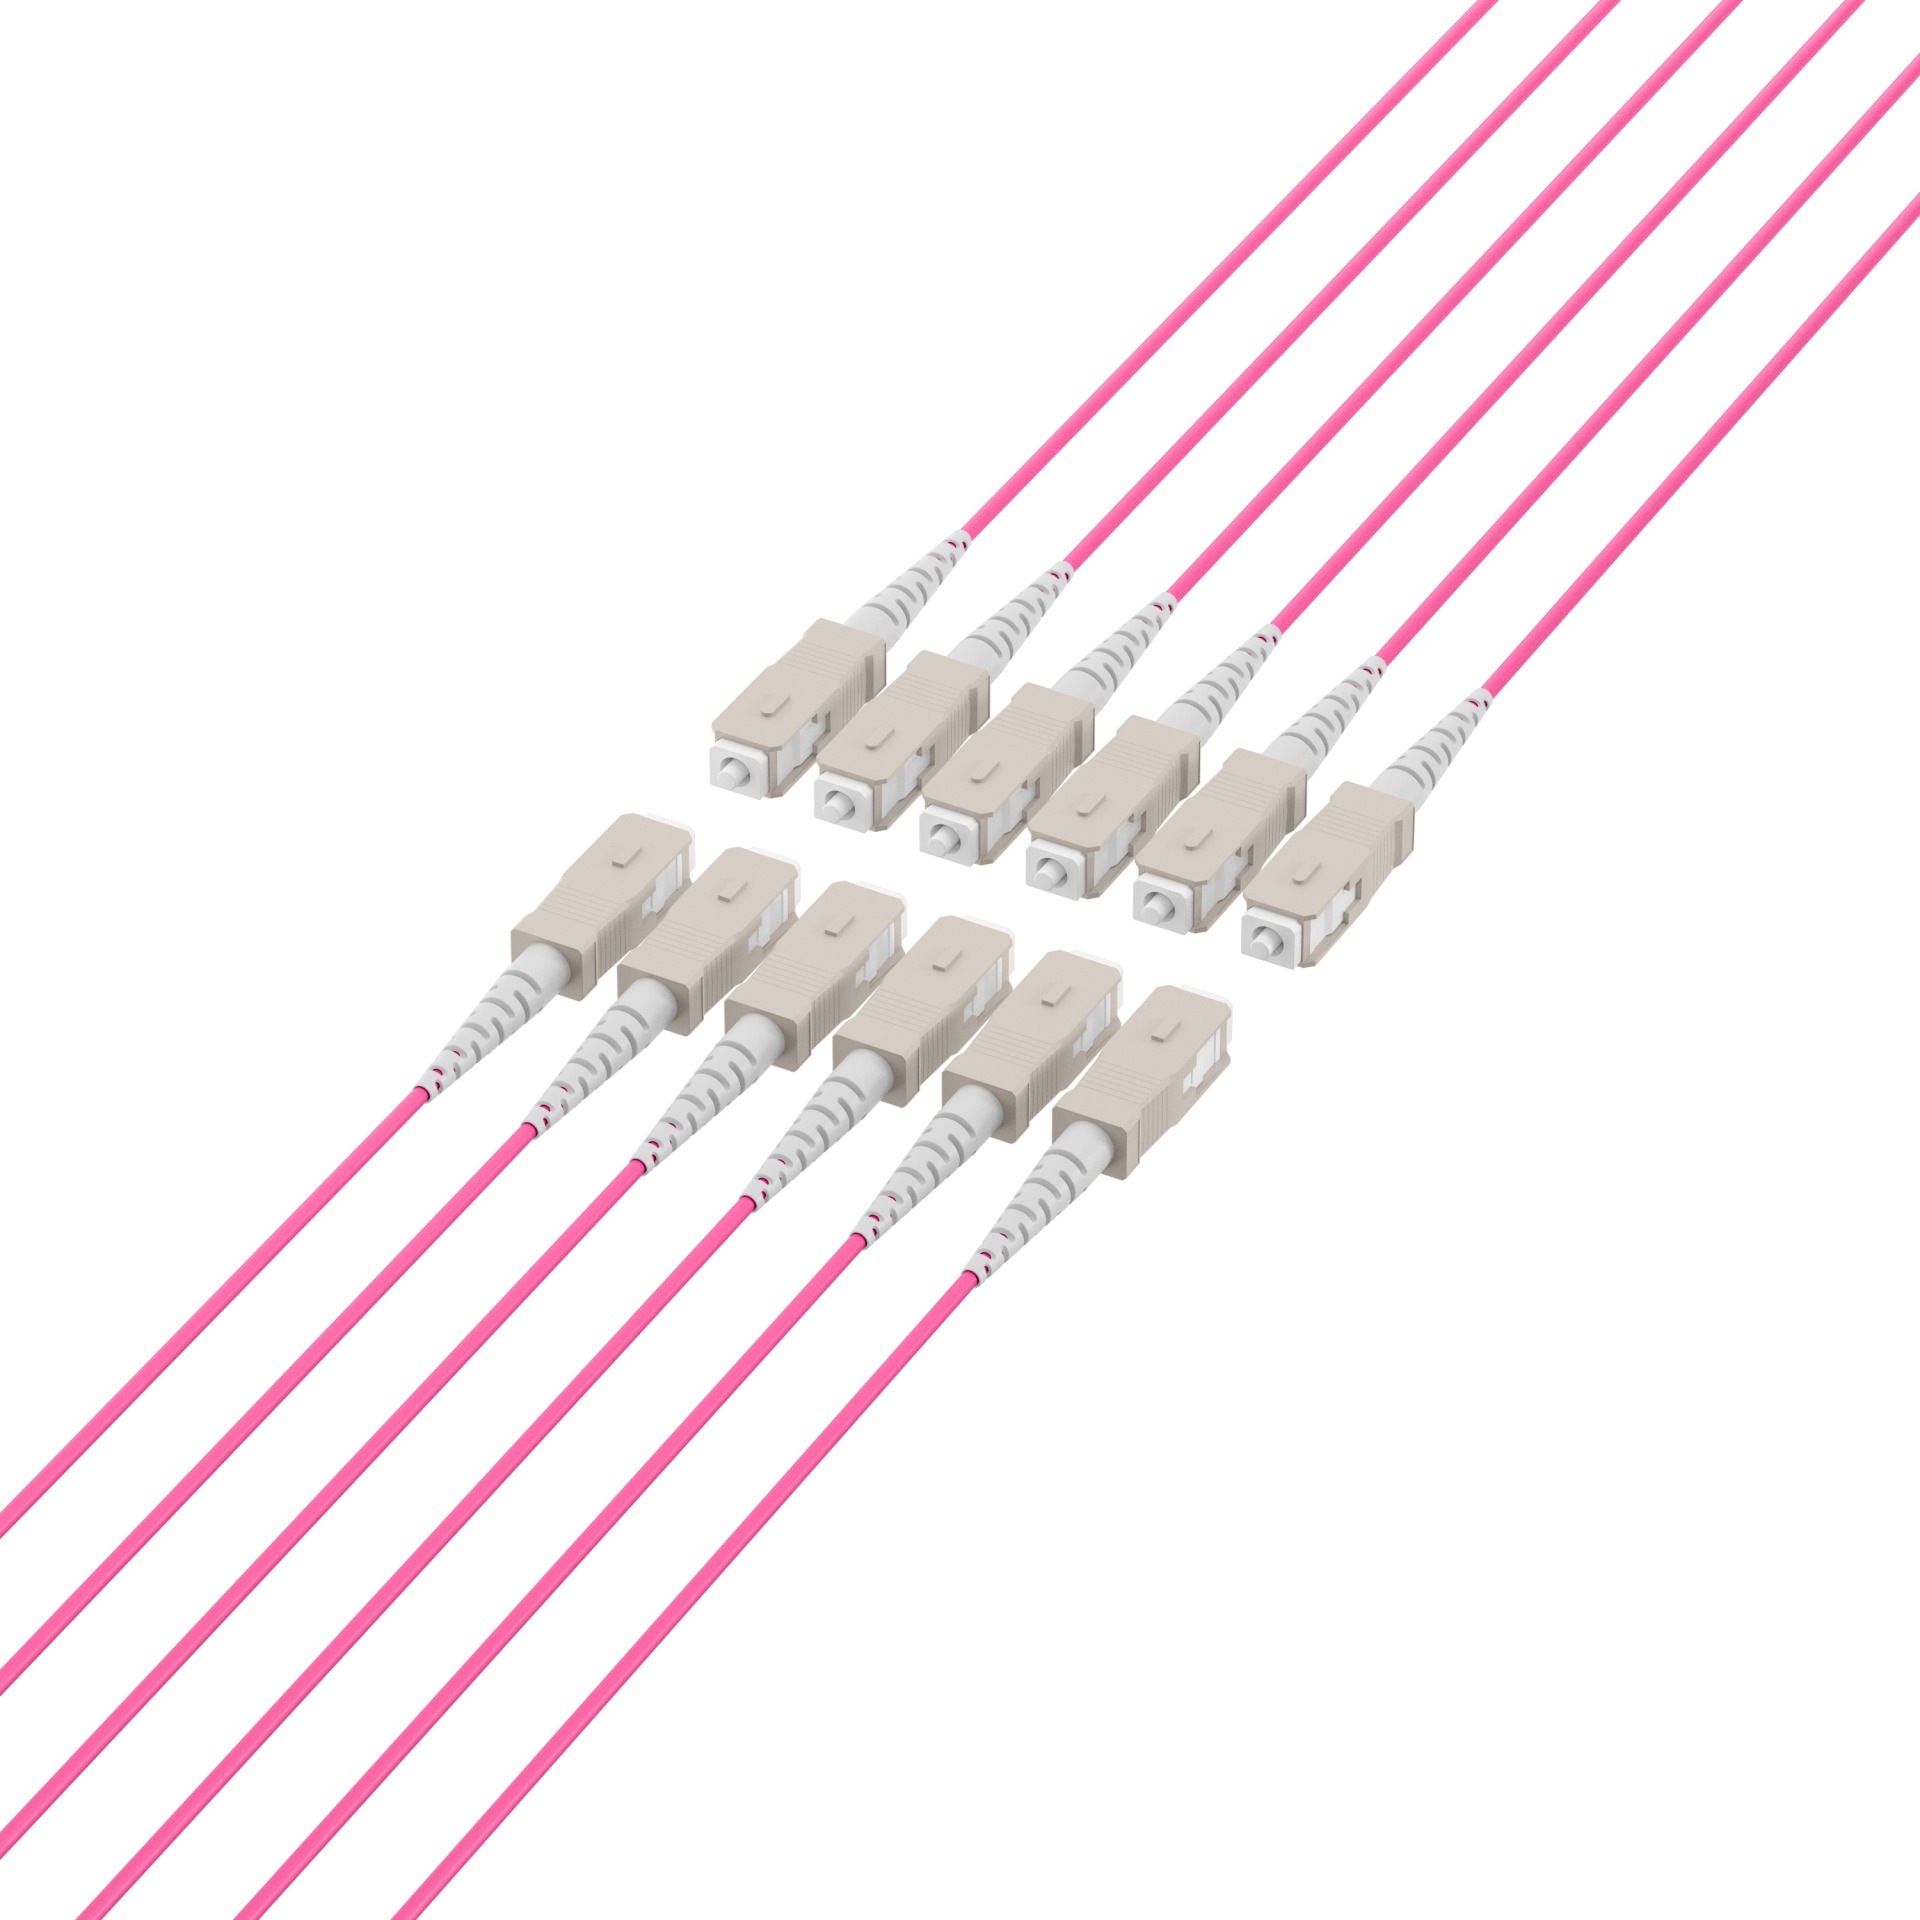 Trunk cable U-DQ(ZN)BH OM4 12G (1x12) SC-SC,180m Dca LSZH